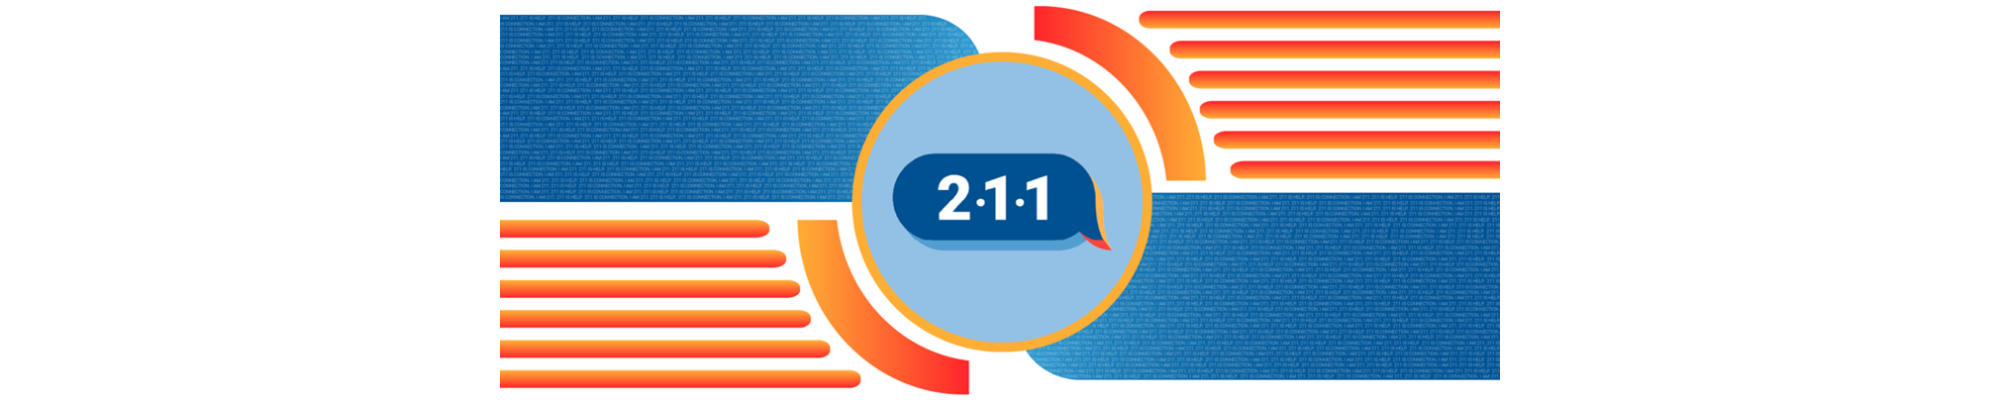 211 logo image